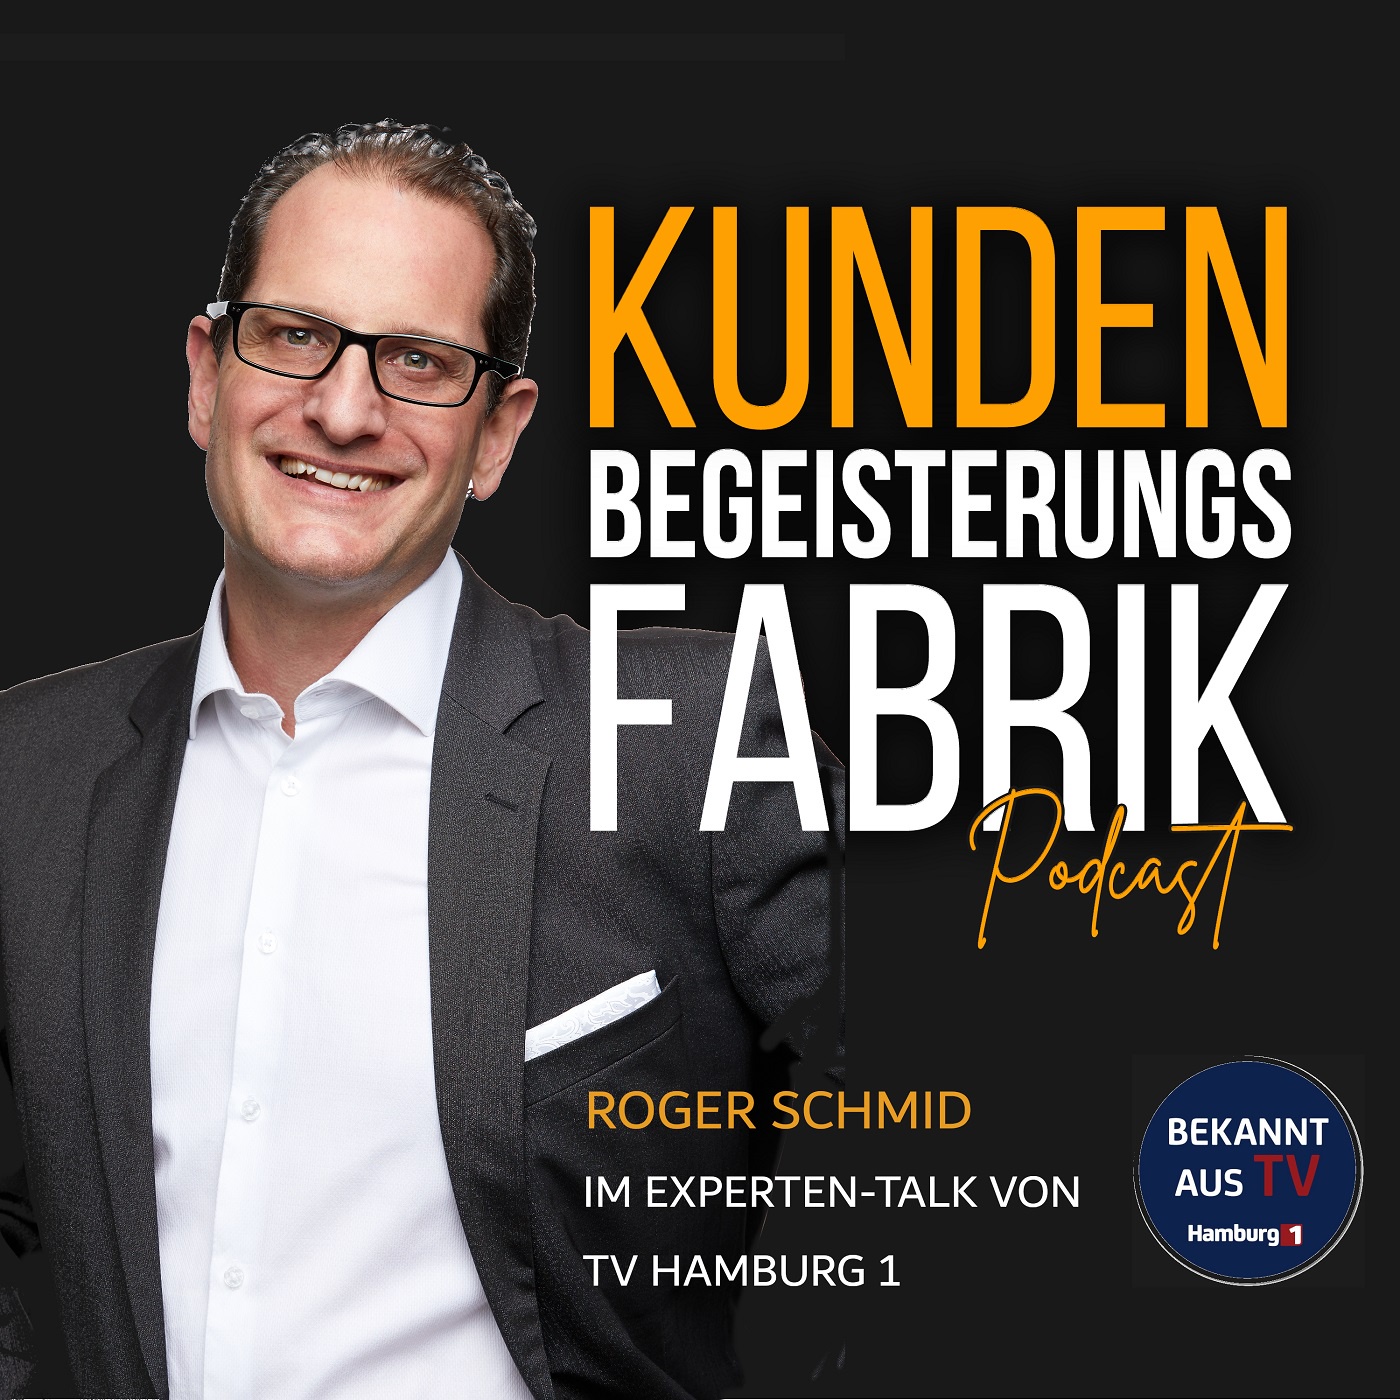 Roger Schmid im Experten-Talk von TV Hamburg 1